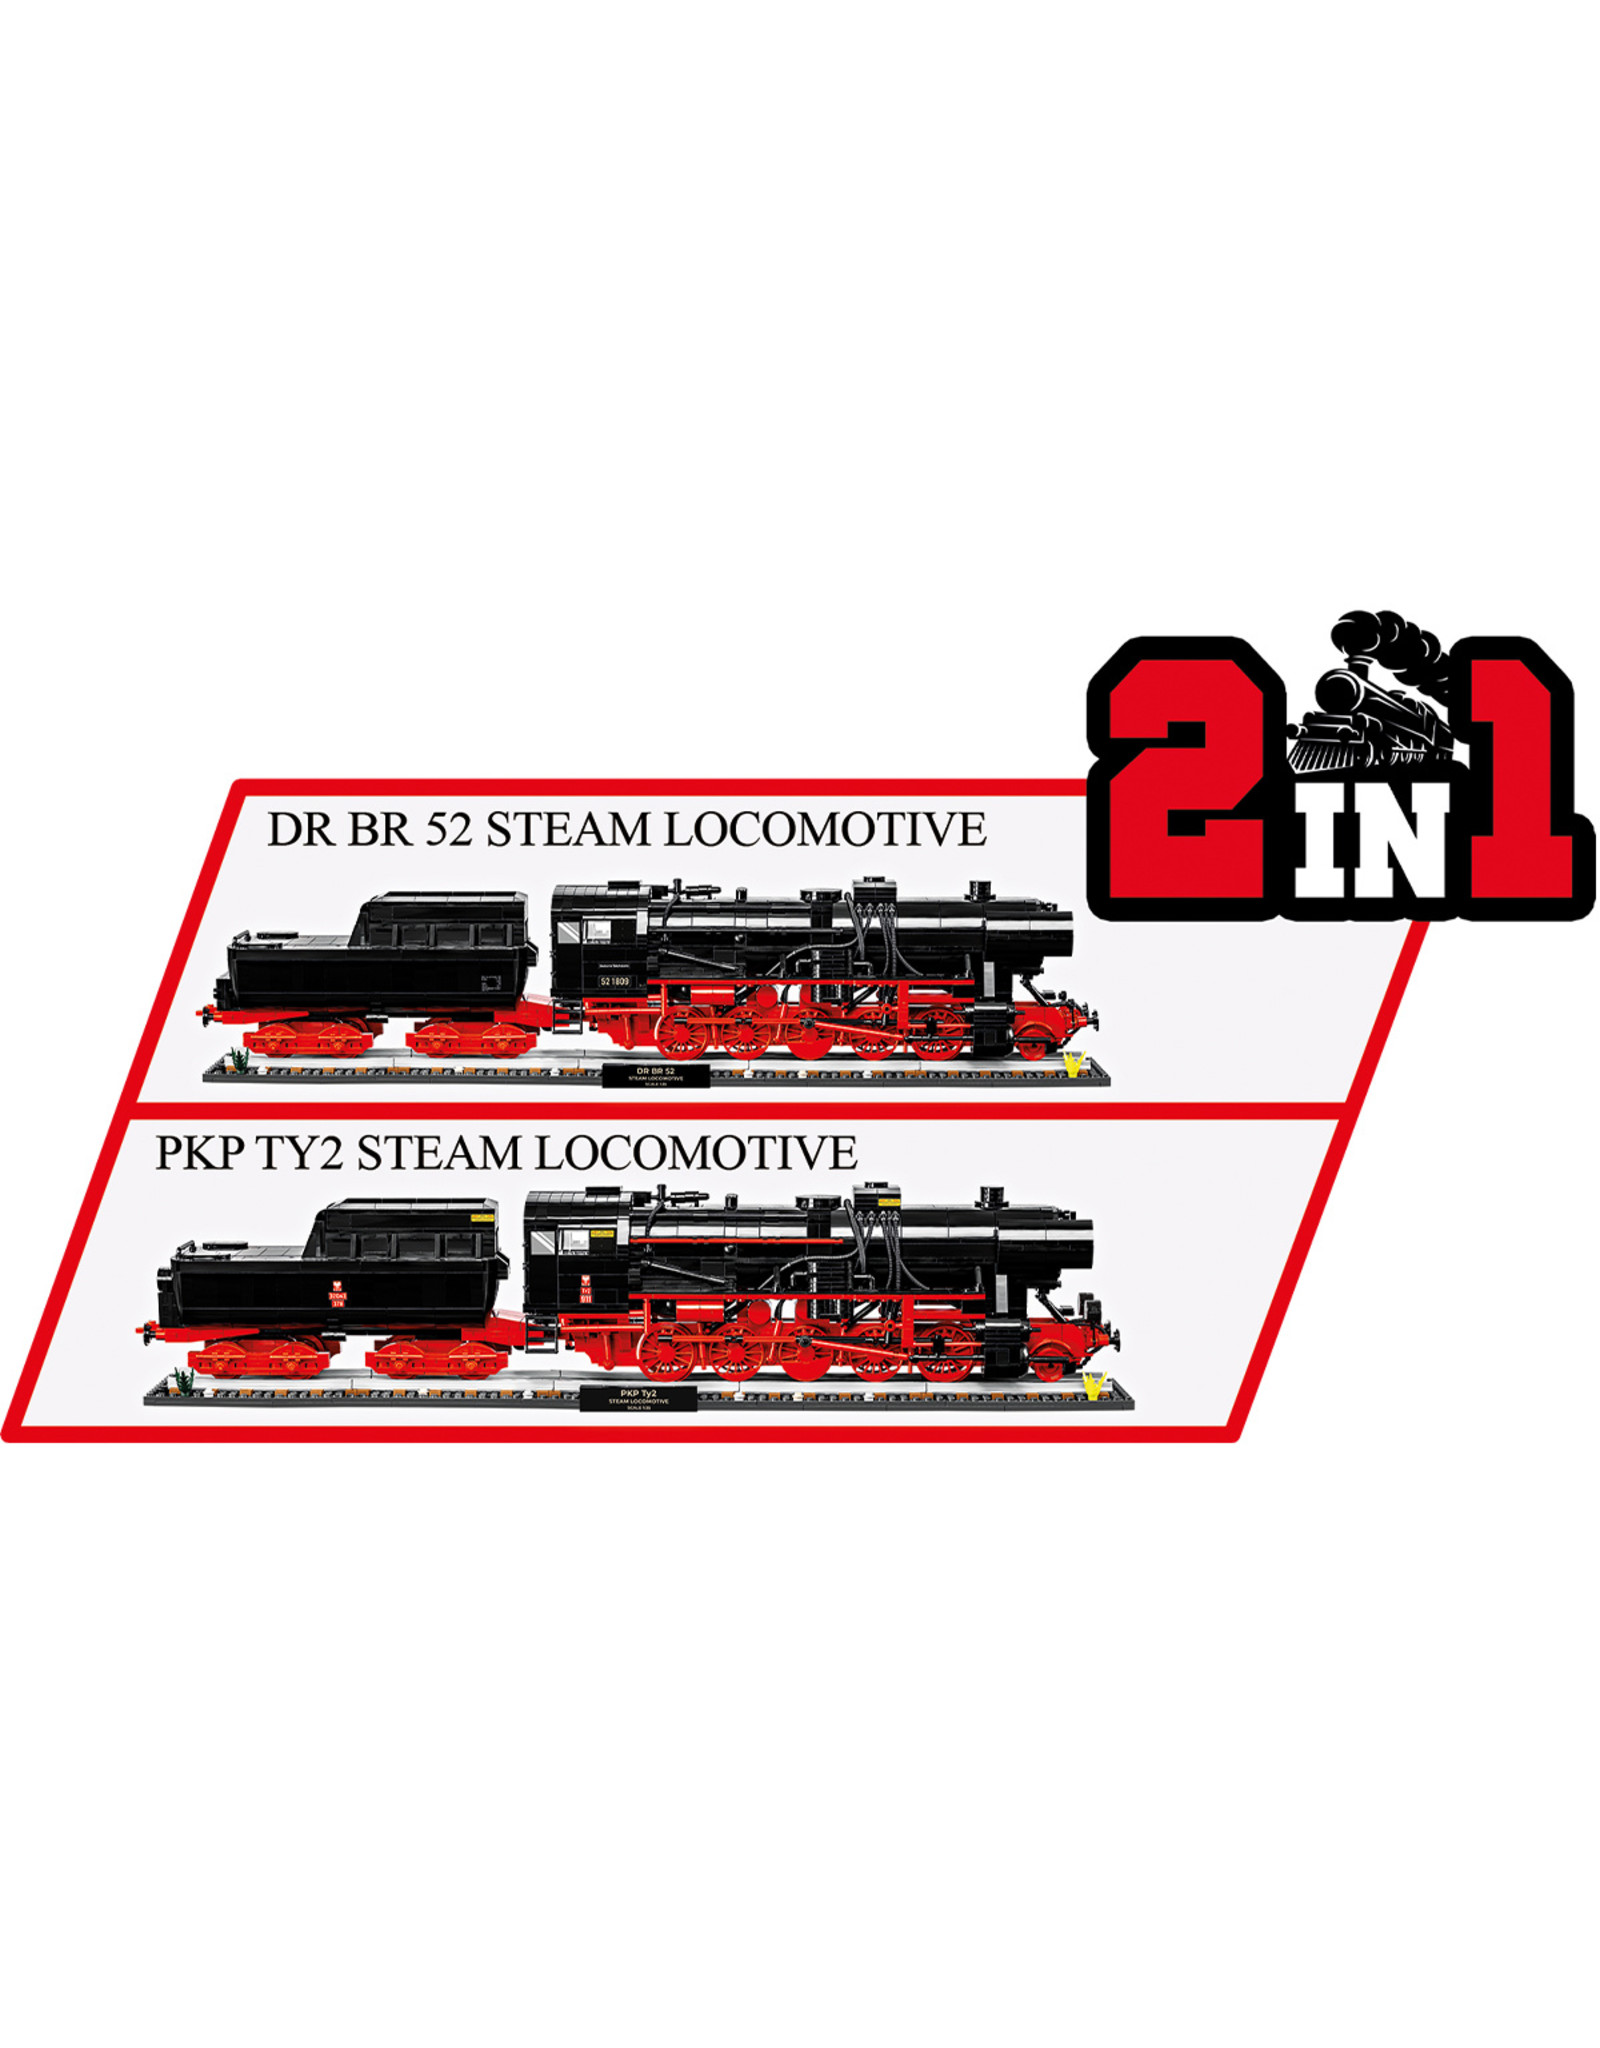 COBI COBI 6280 DRB Class 52 Steam Locomotive